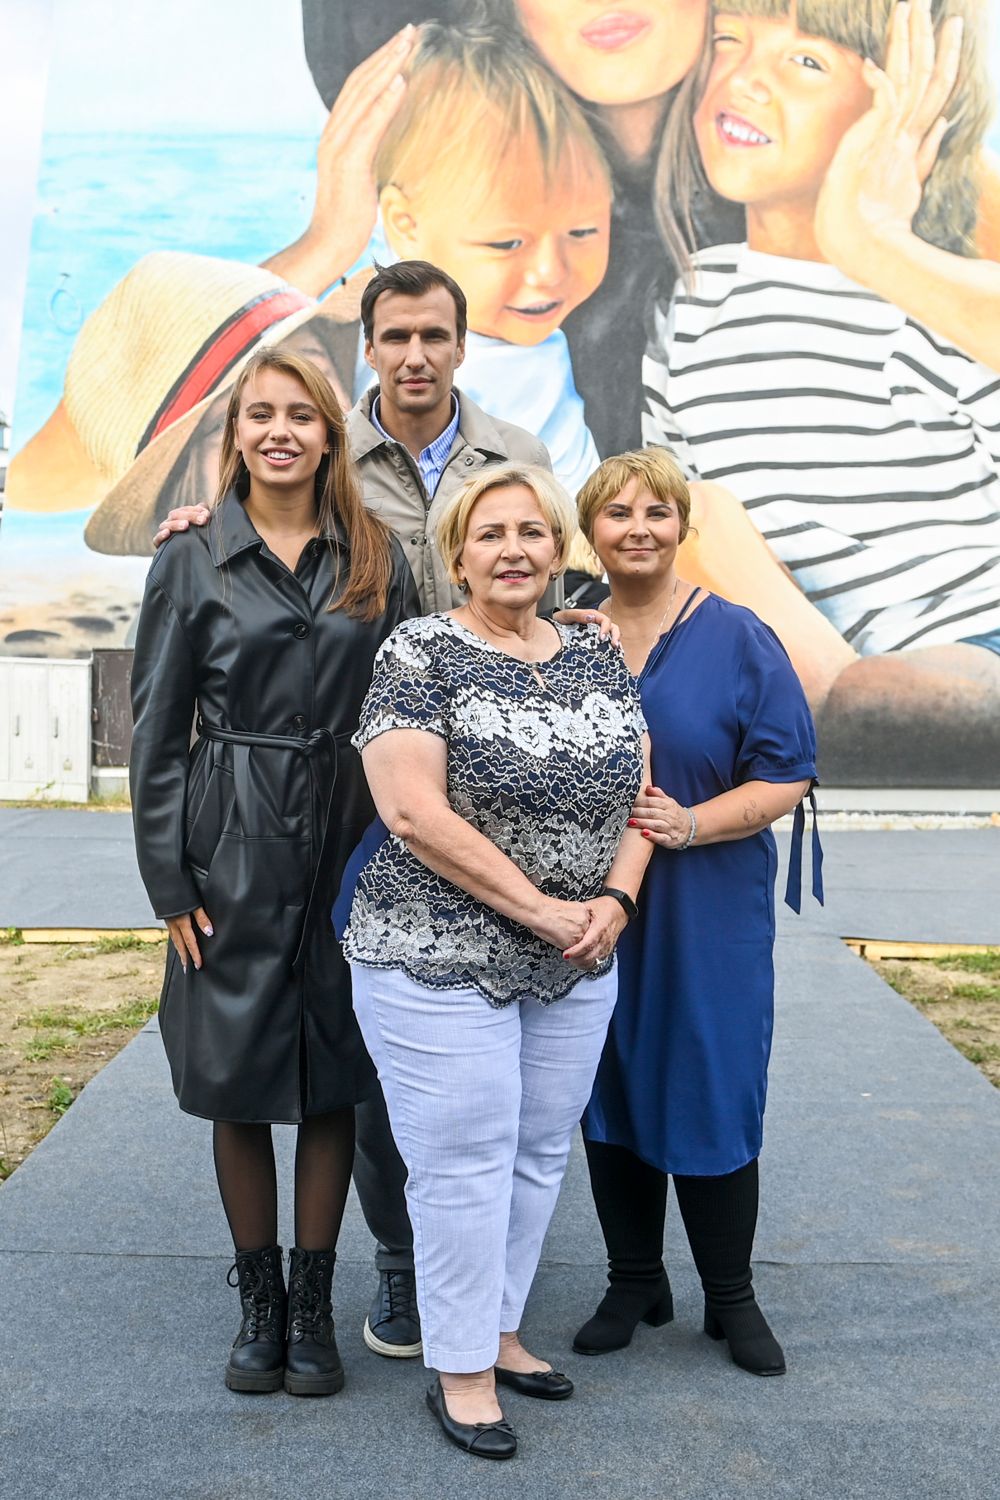 Oliwia Bieniuk, Jarosław Bieniuk, mama Ani Przybylskiej, siostra Ani Przybylskiej - odsłonięcie muralu w Gdyni